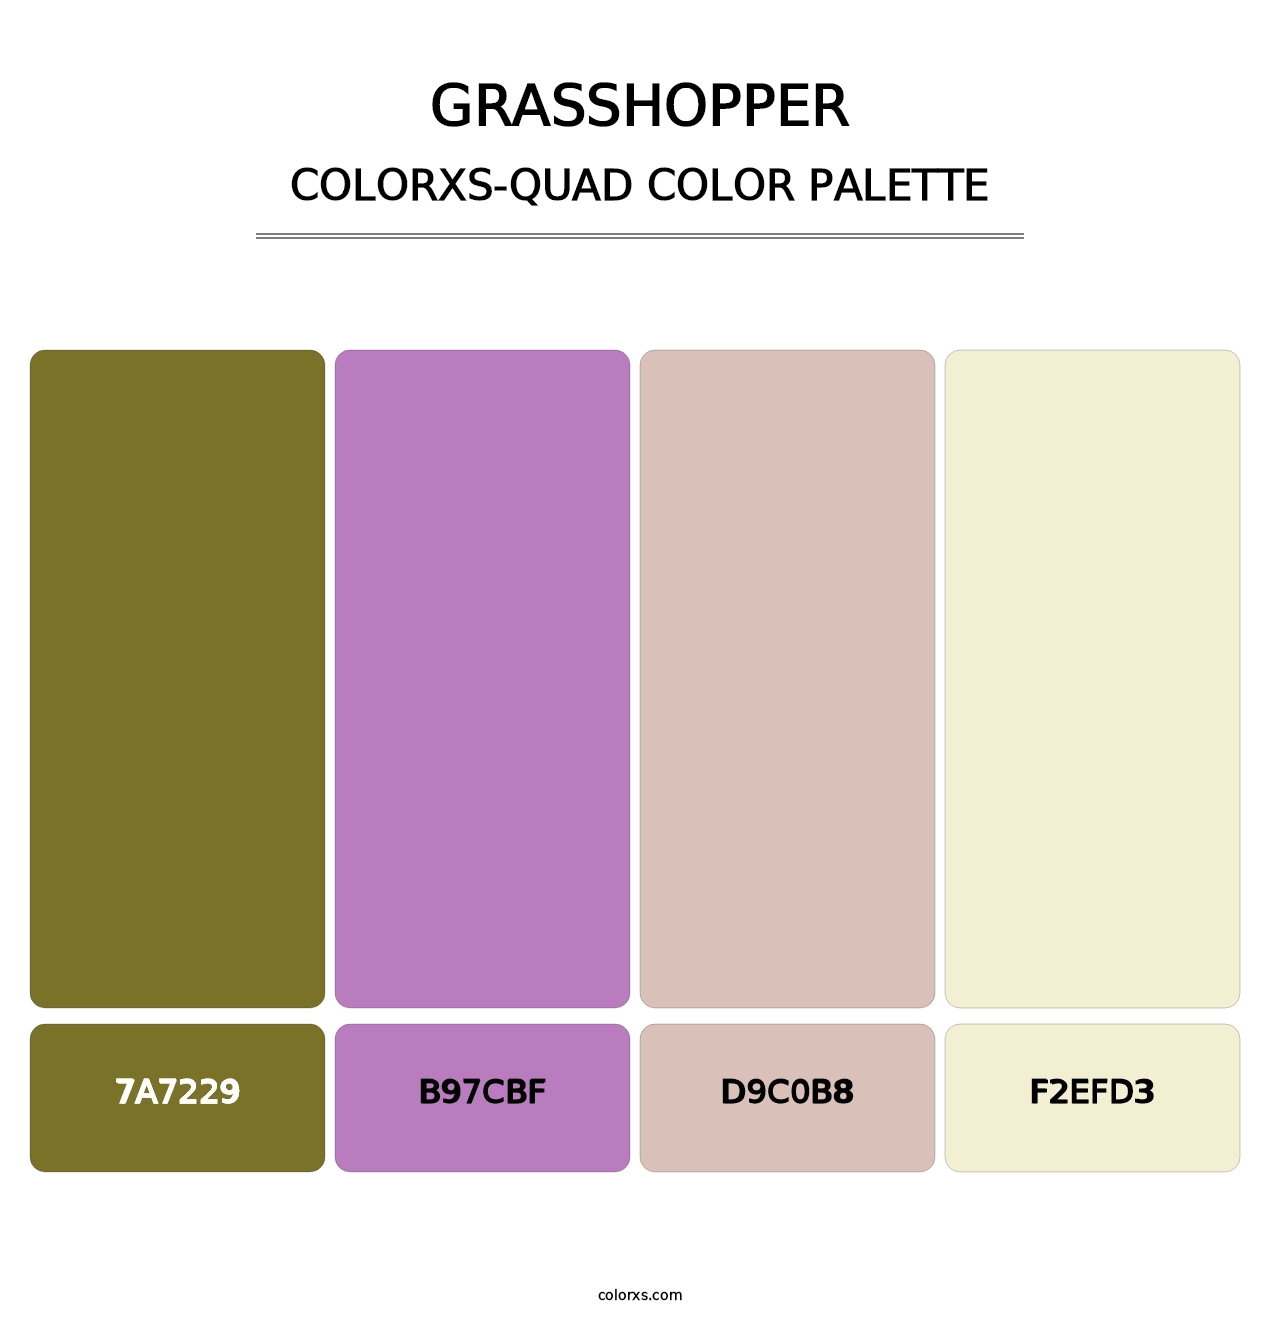 Grasshopper - Colorxs Quad Palette